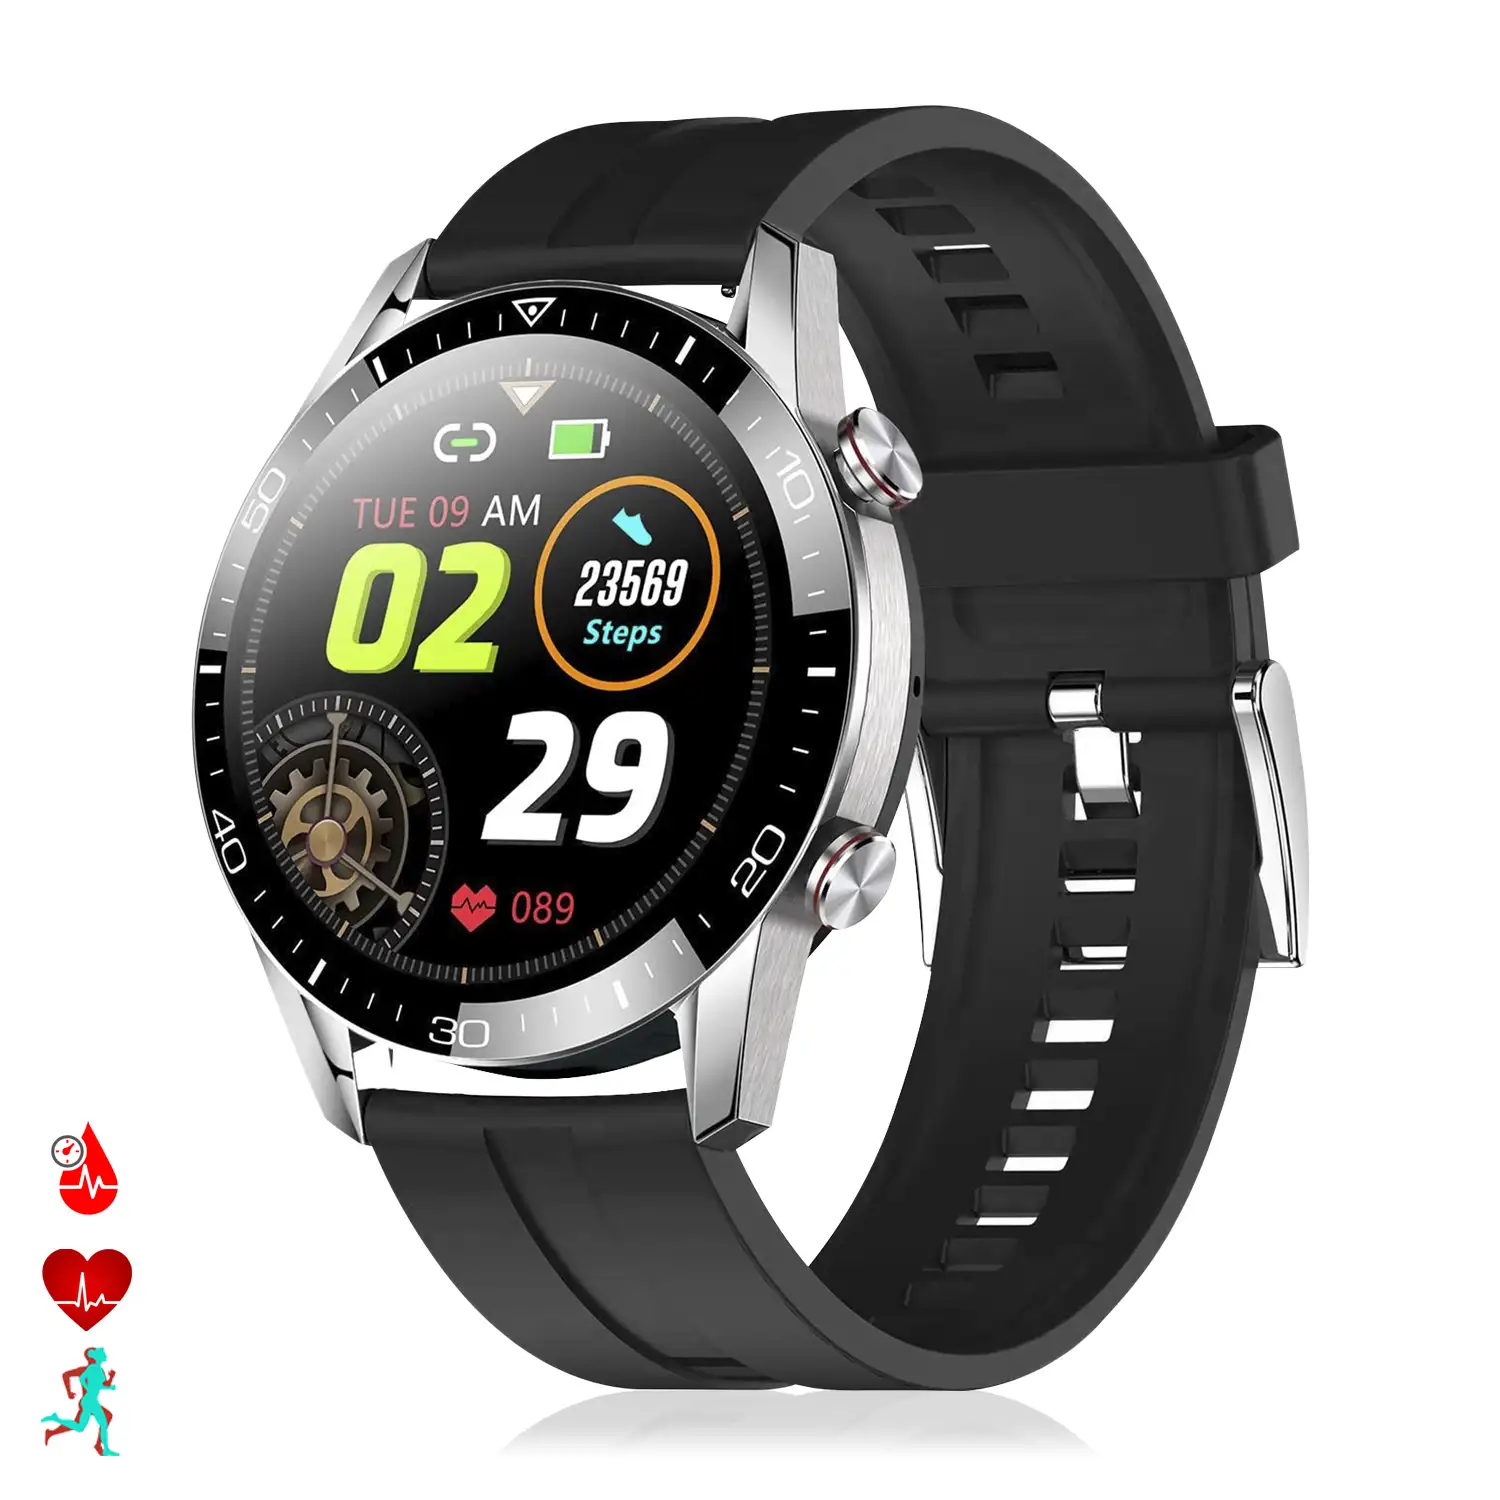 Smartwatch TK28 con monitor cardíaco, tensión y O2 en sangre. Varios modos deportivos.